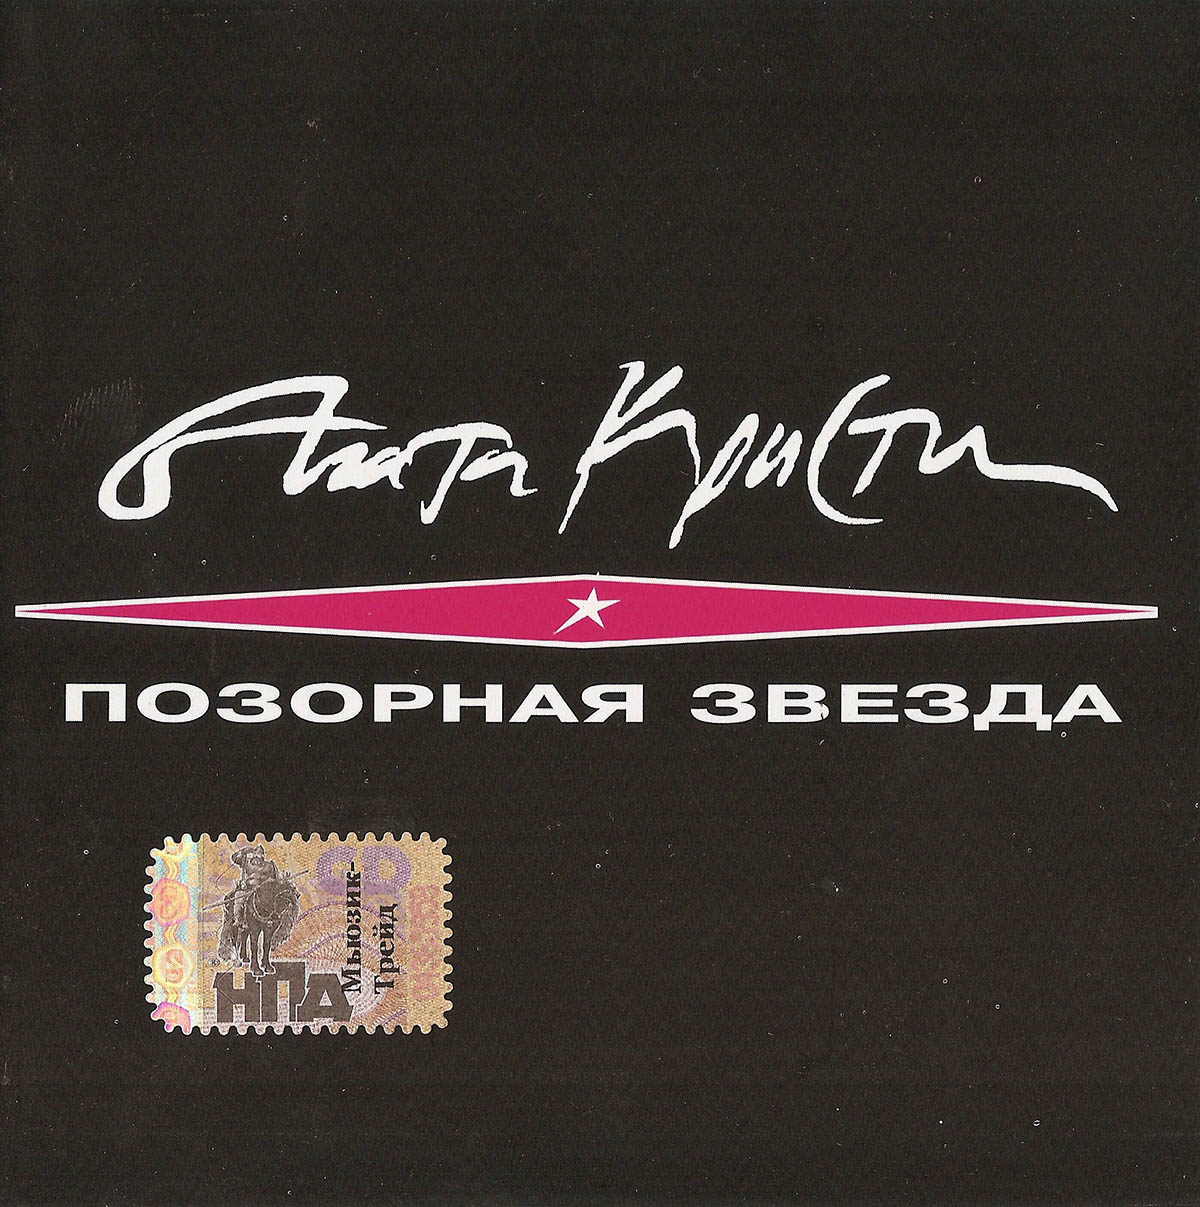 Обложка альбома группы «Агата Кристи» – «Позорная звезда» (1993)